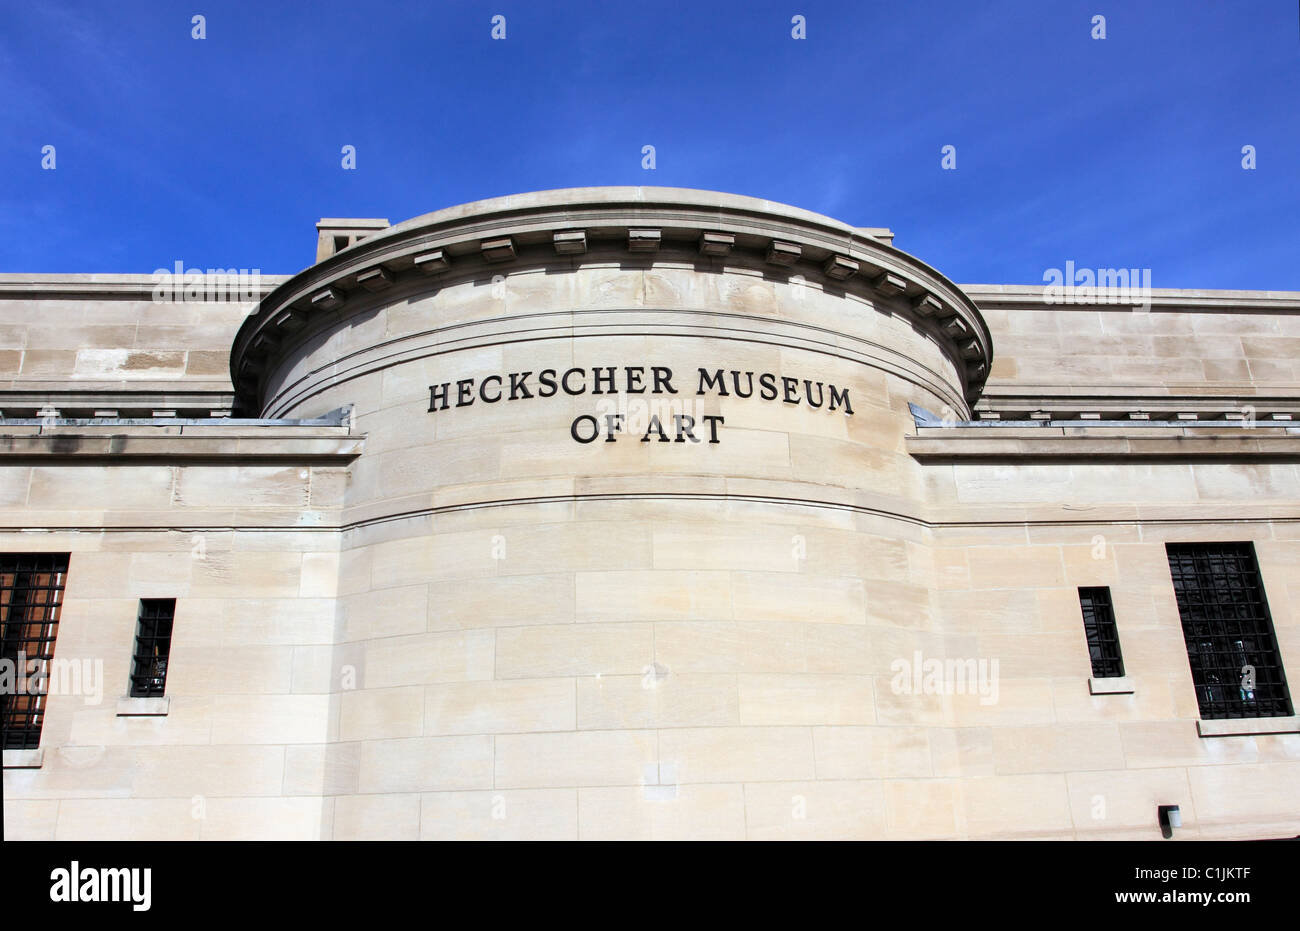 The Heckscher Museum Of Art